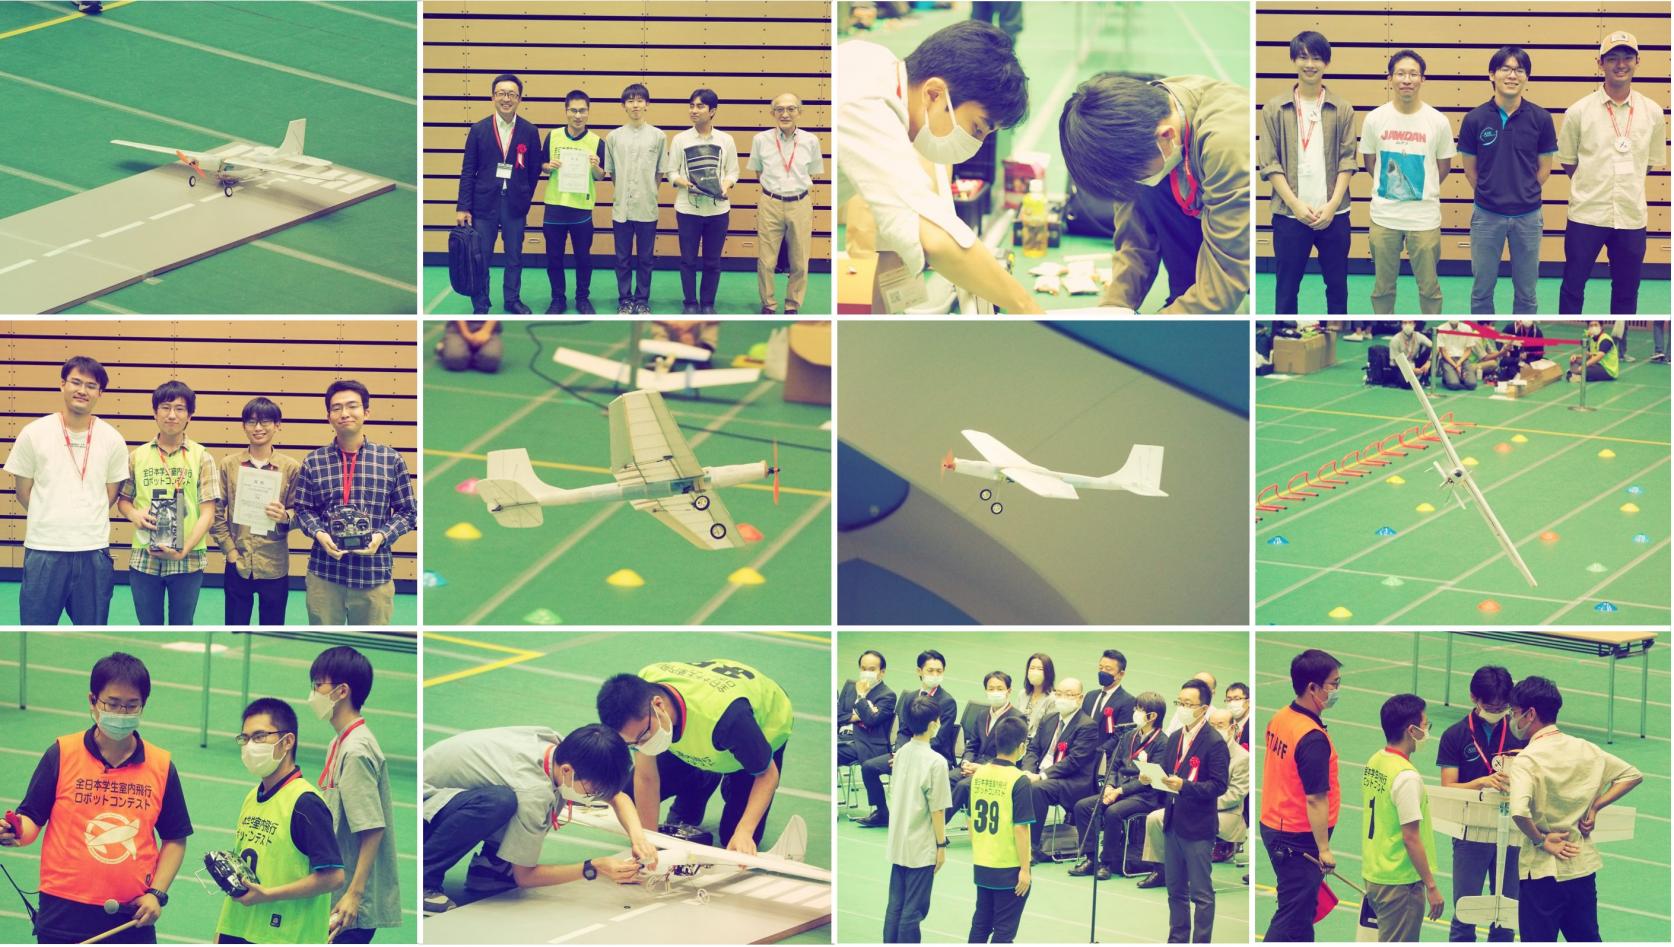 航空宇宙工学科の学生チームが全日本飛行ロボットコンテストに出場し、航空宇宙工房がユニークデザイン部門「3D EXPERIENCE賞」、内山研究室が自動操縦部門「MathWorks賞」を受賞しました。